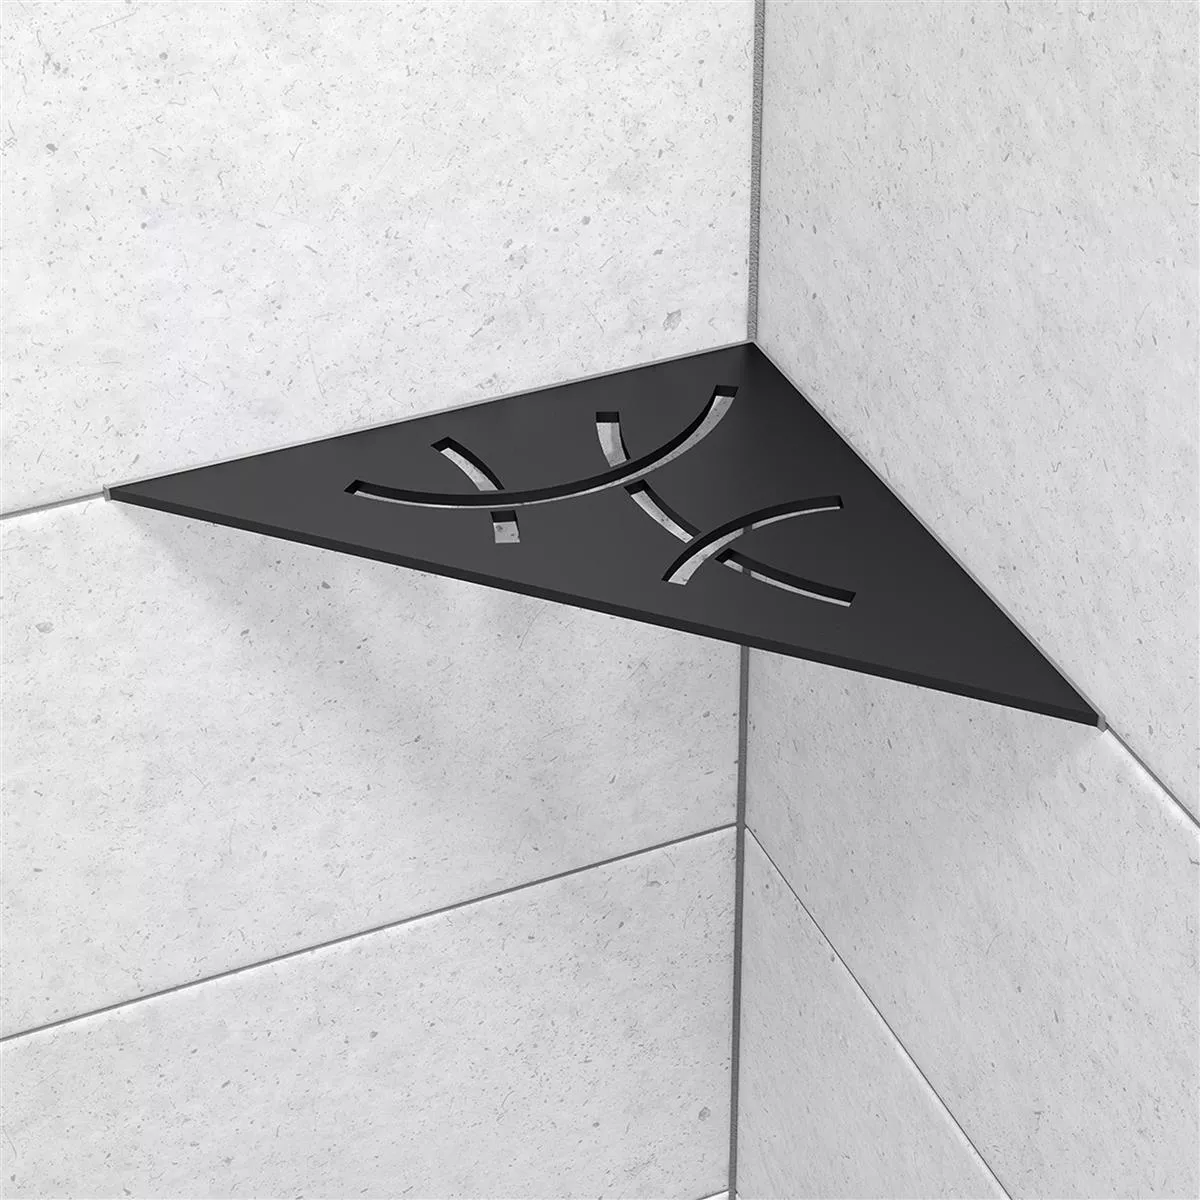 Schlüter falipolc háromszög 21x21cm Curve grafit fekete matt